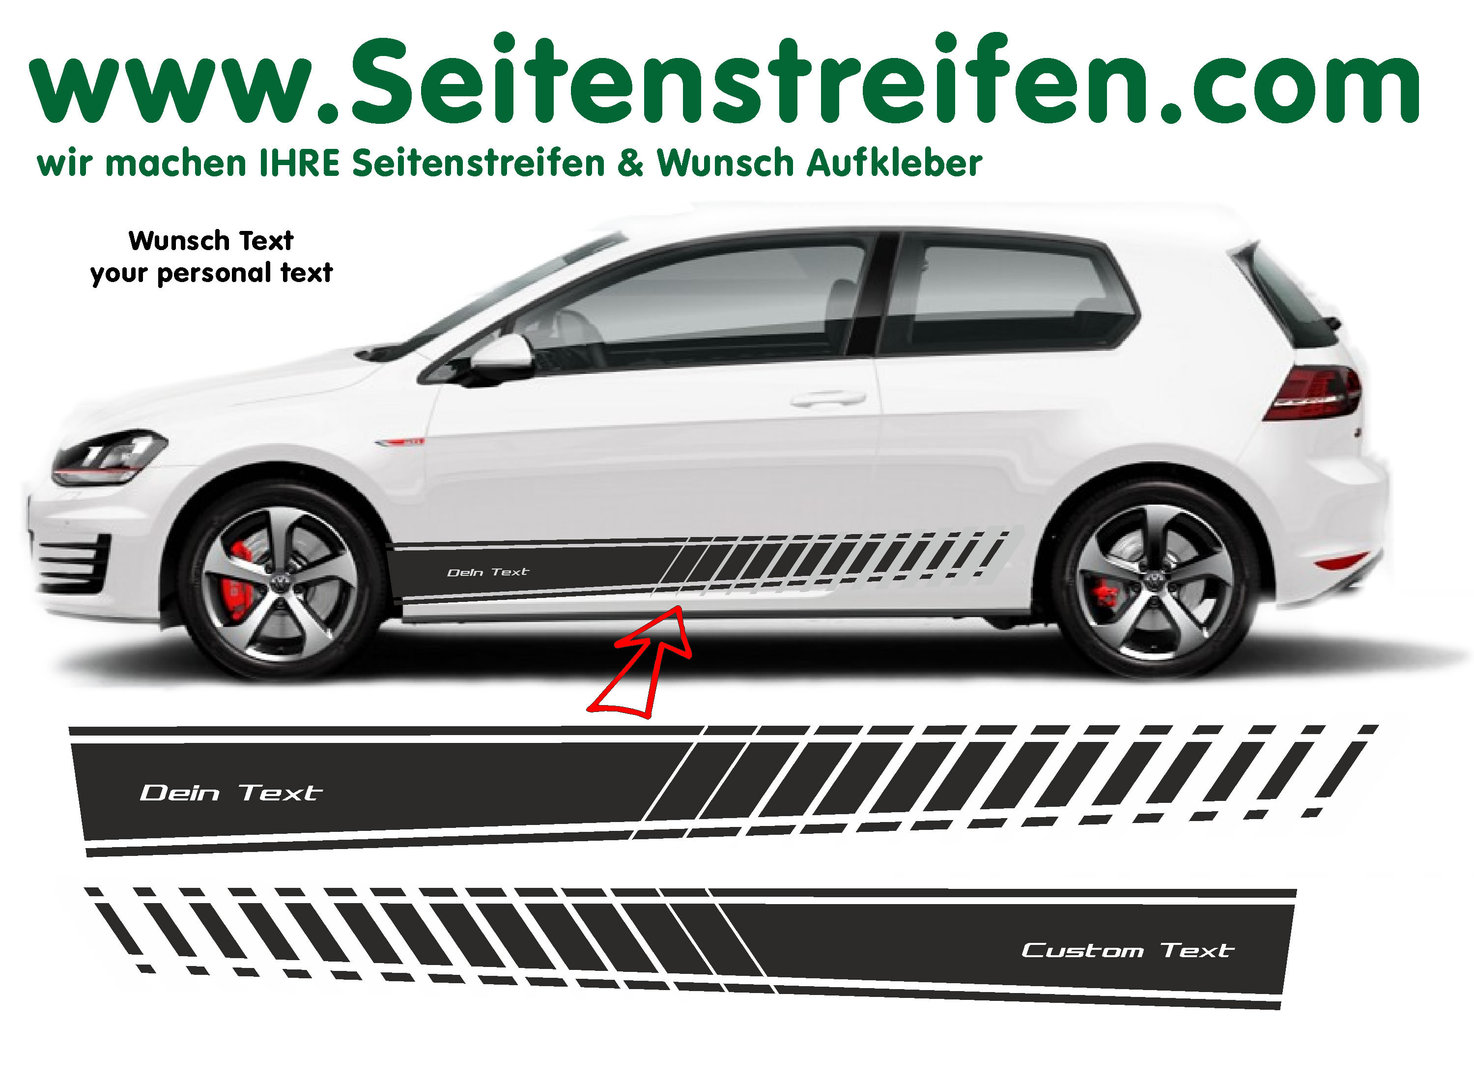 VW Golf Wunsch Text EVO XL Seitenstreifen Aufkleber Set für 3+4 Türer - Art. Nr.: 8516